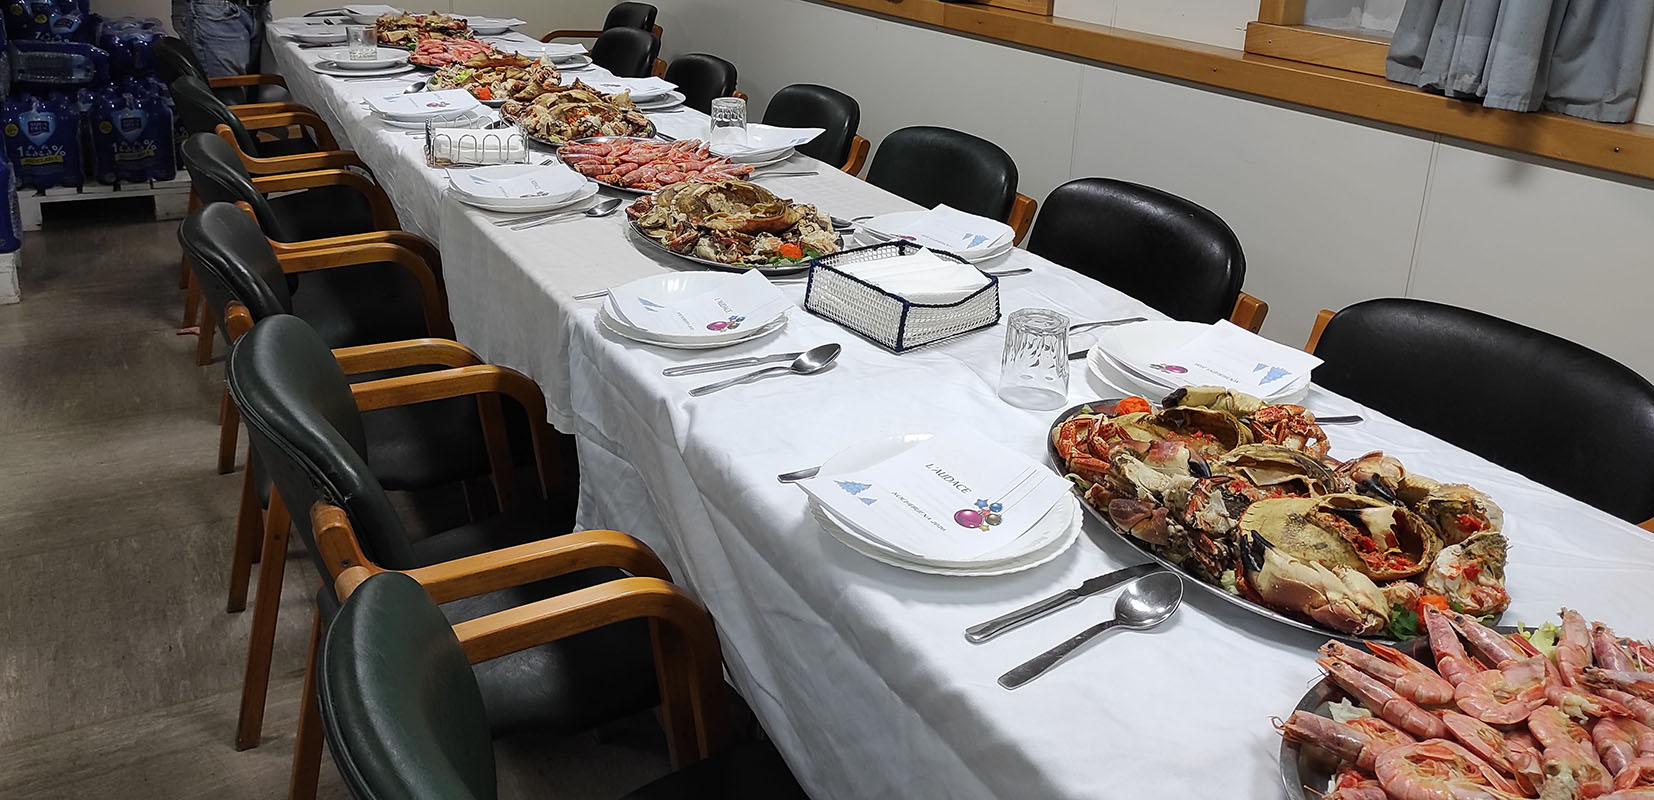 Cena de Nochebuena en el buque “L’audace”.